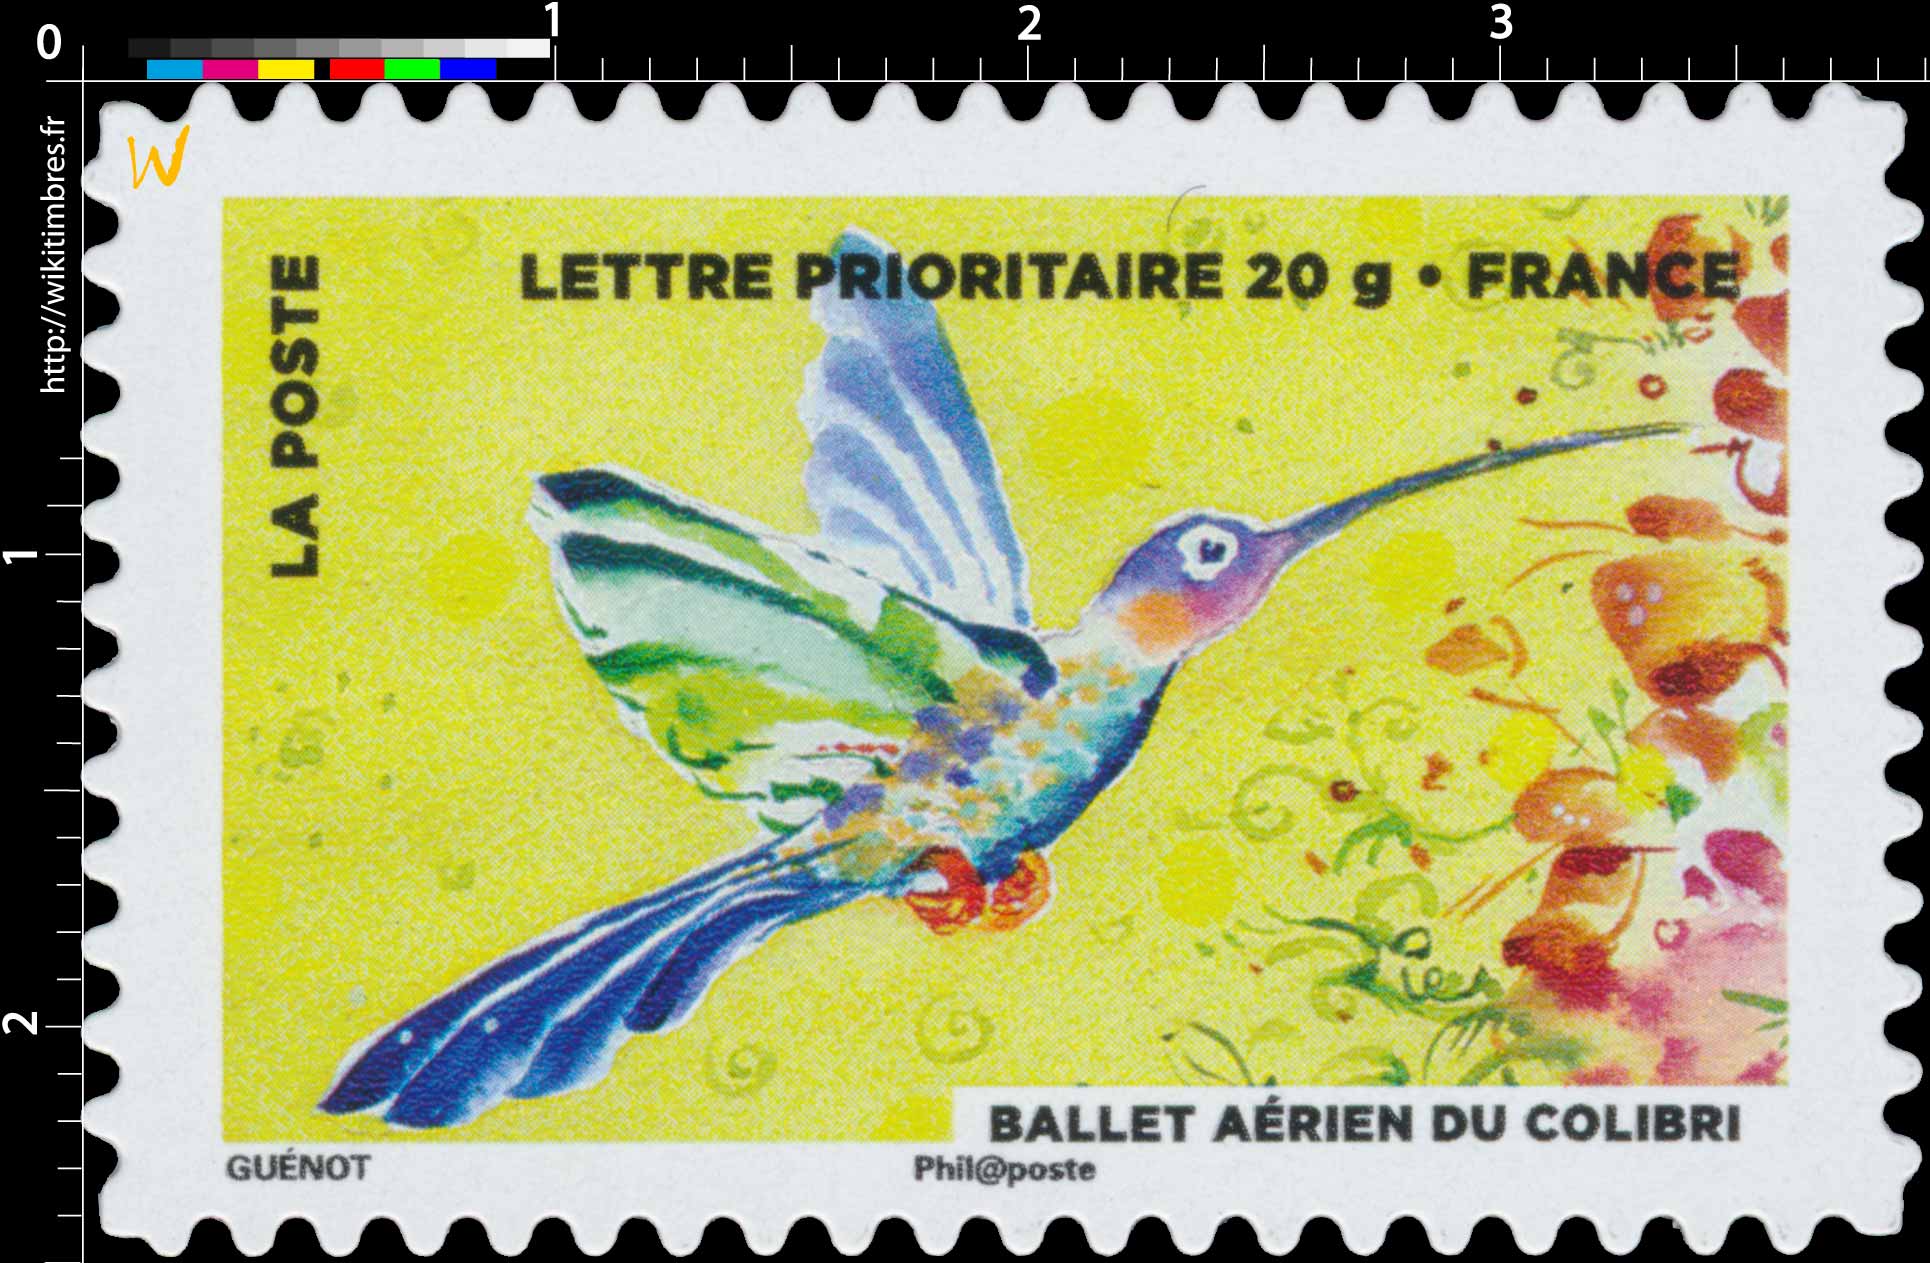 2013 Ballet aérien du colibri